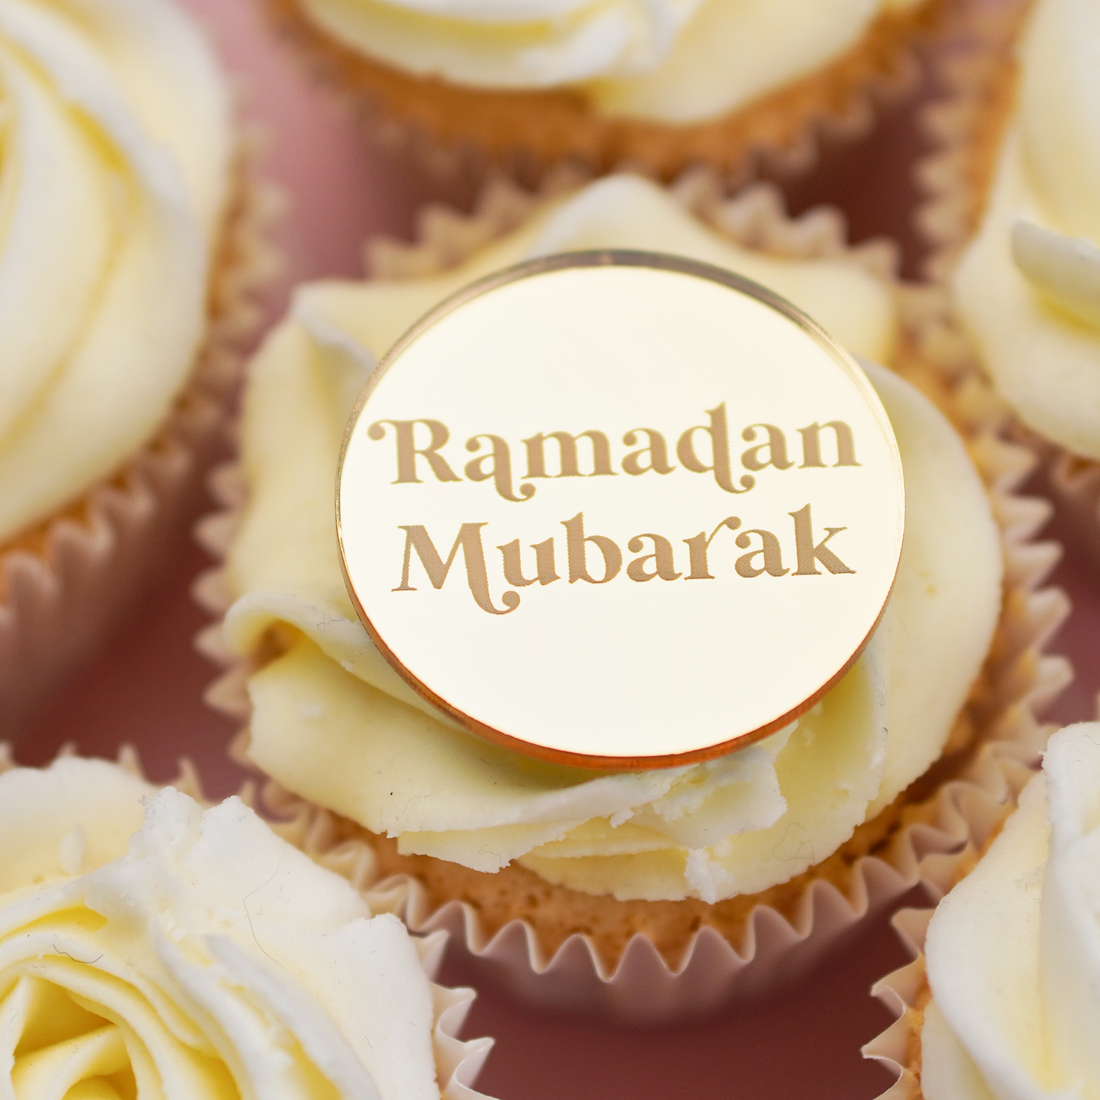 Ramadan Mubarak Cake Decorations